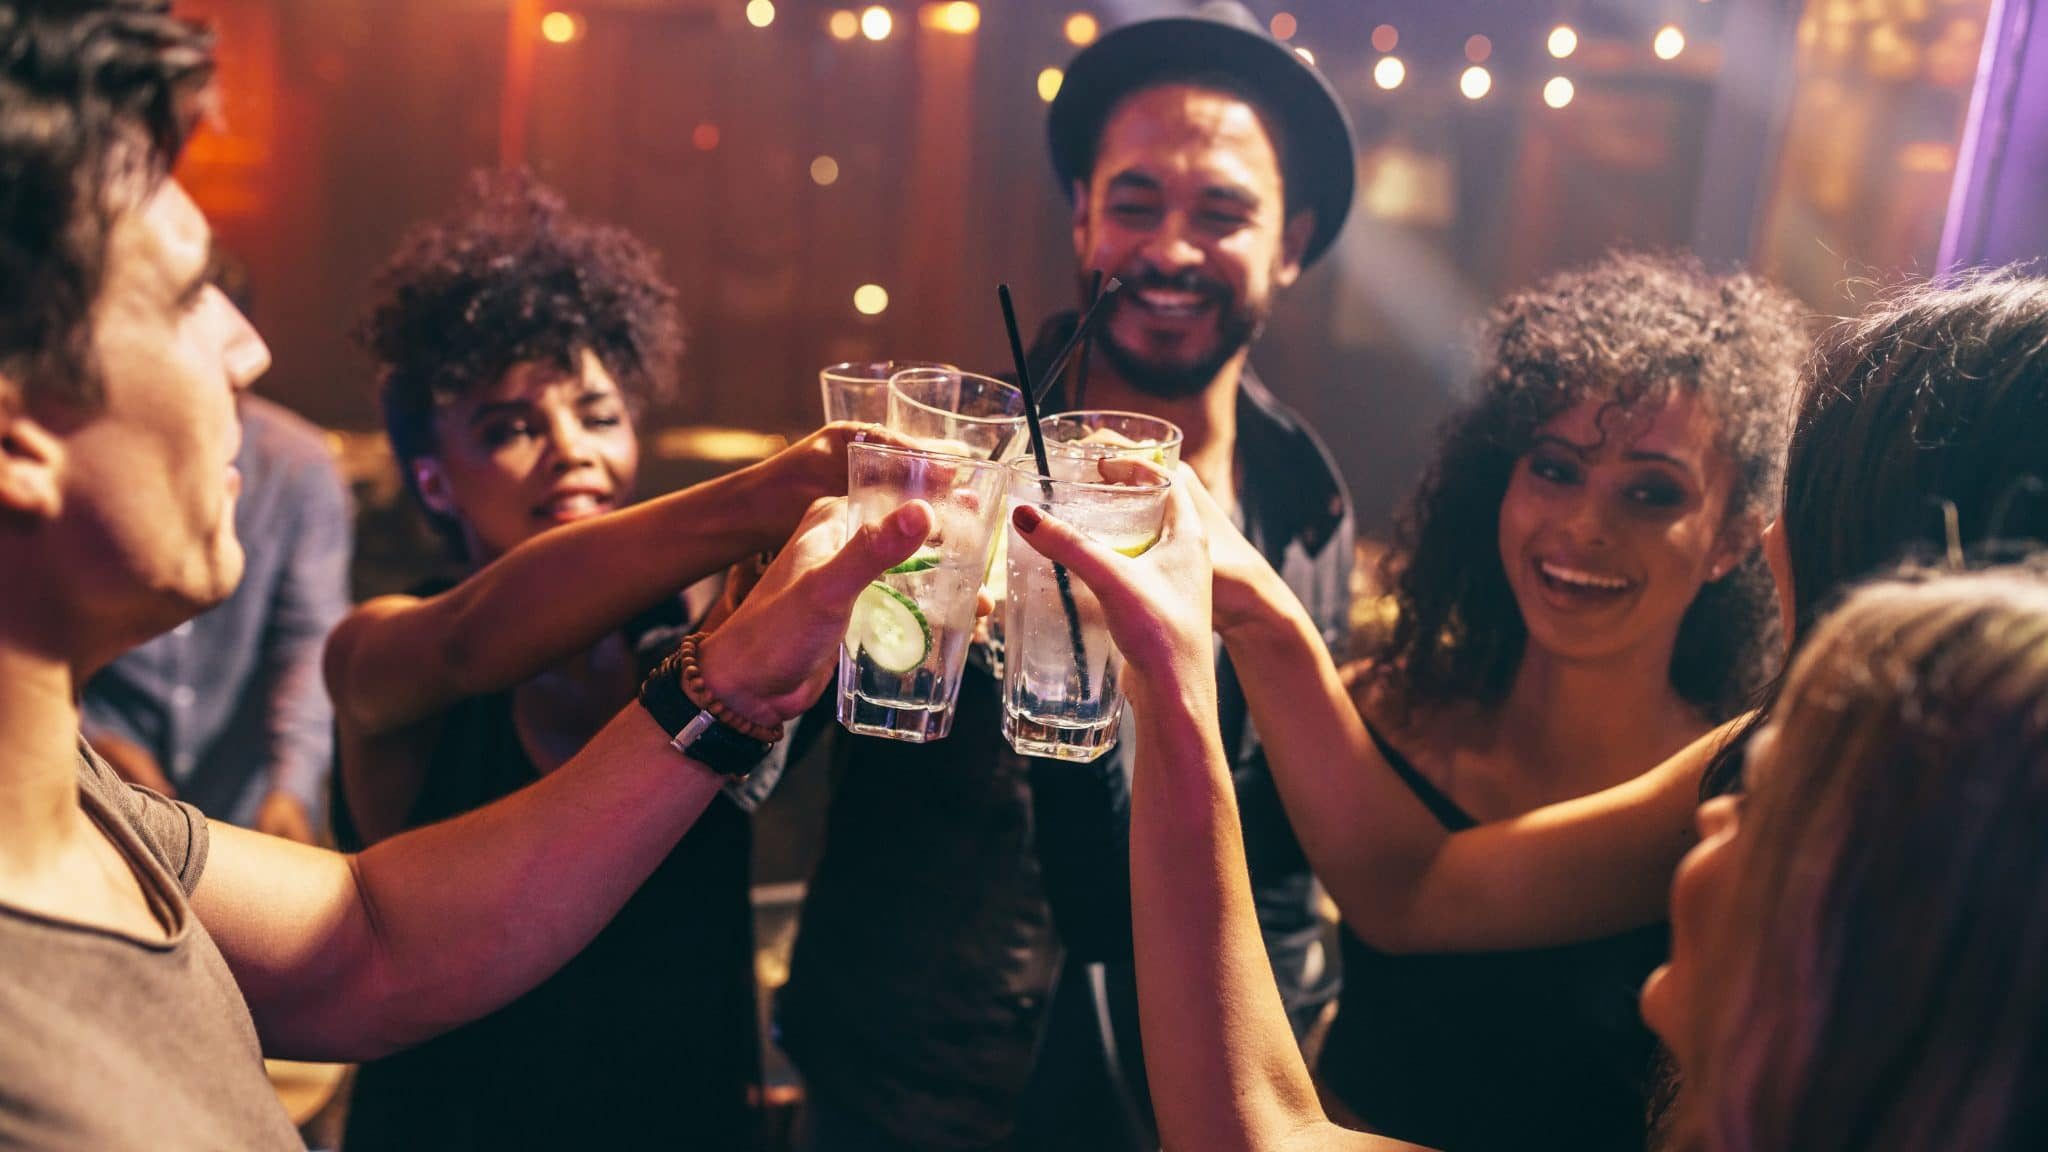 Comment privatiser un bar gratuitement pour réussir sa soirée?